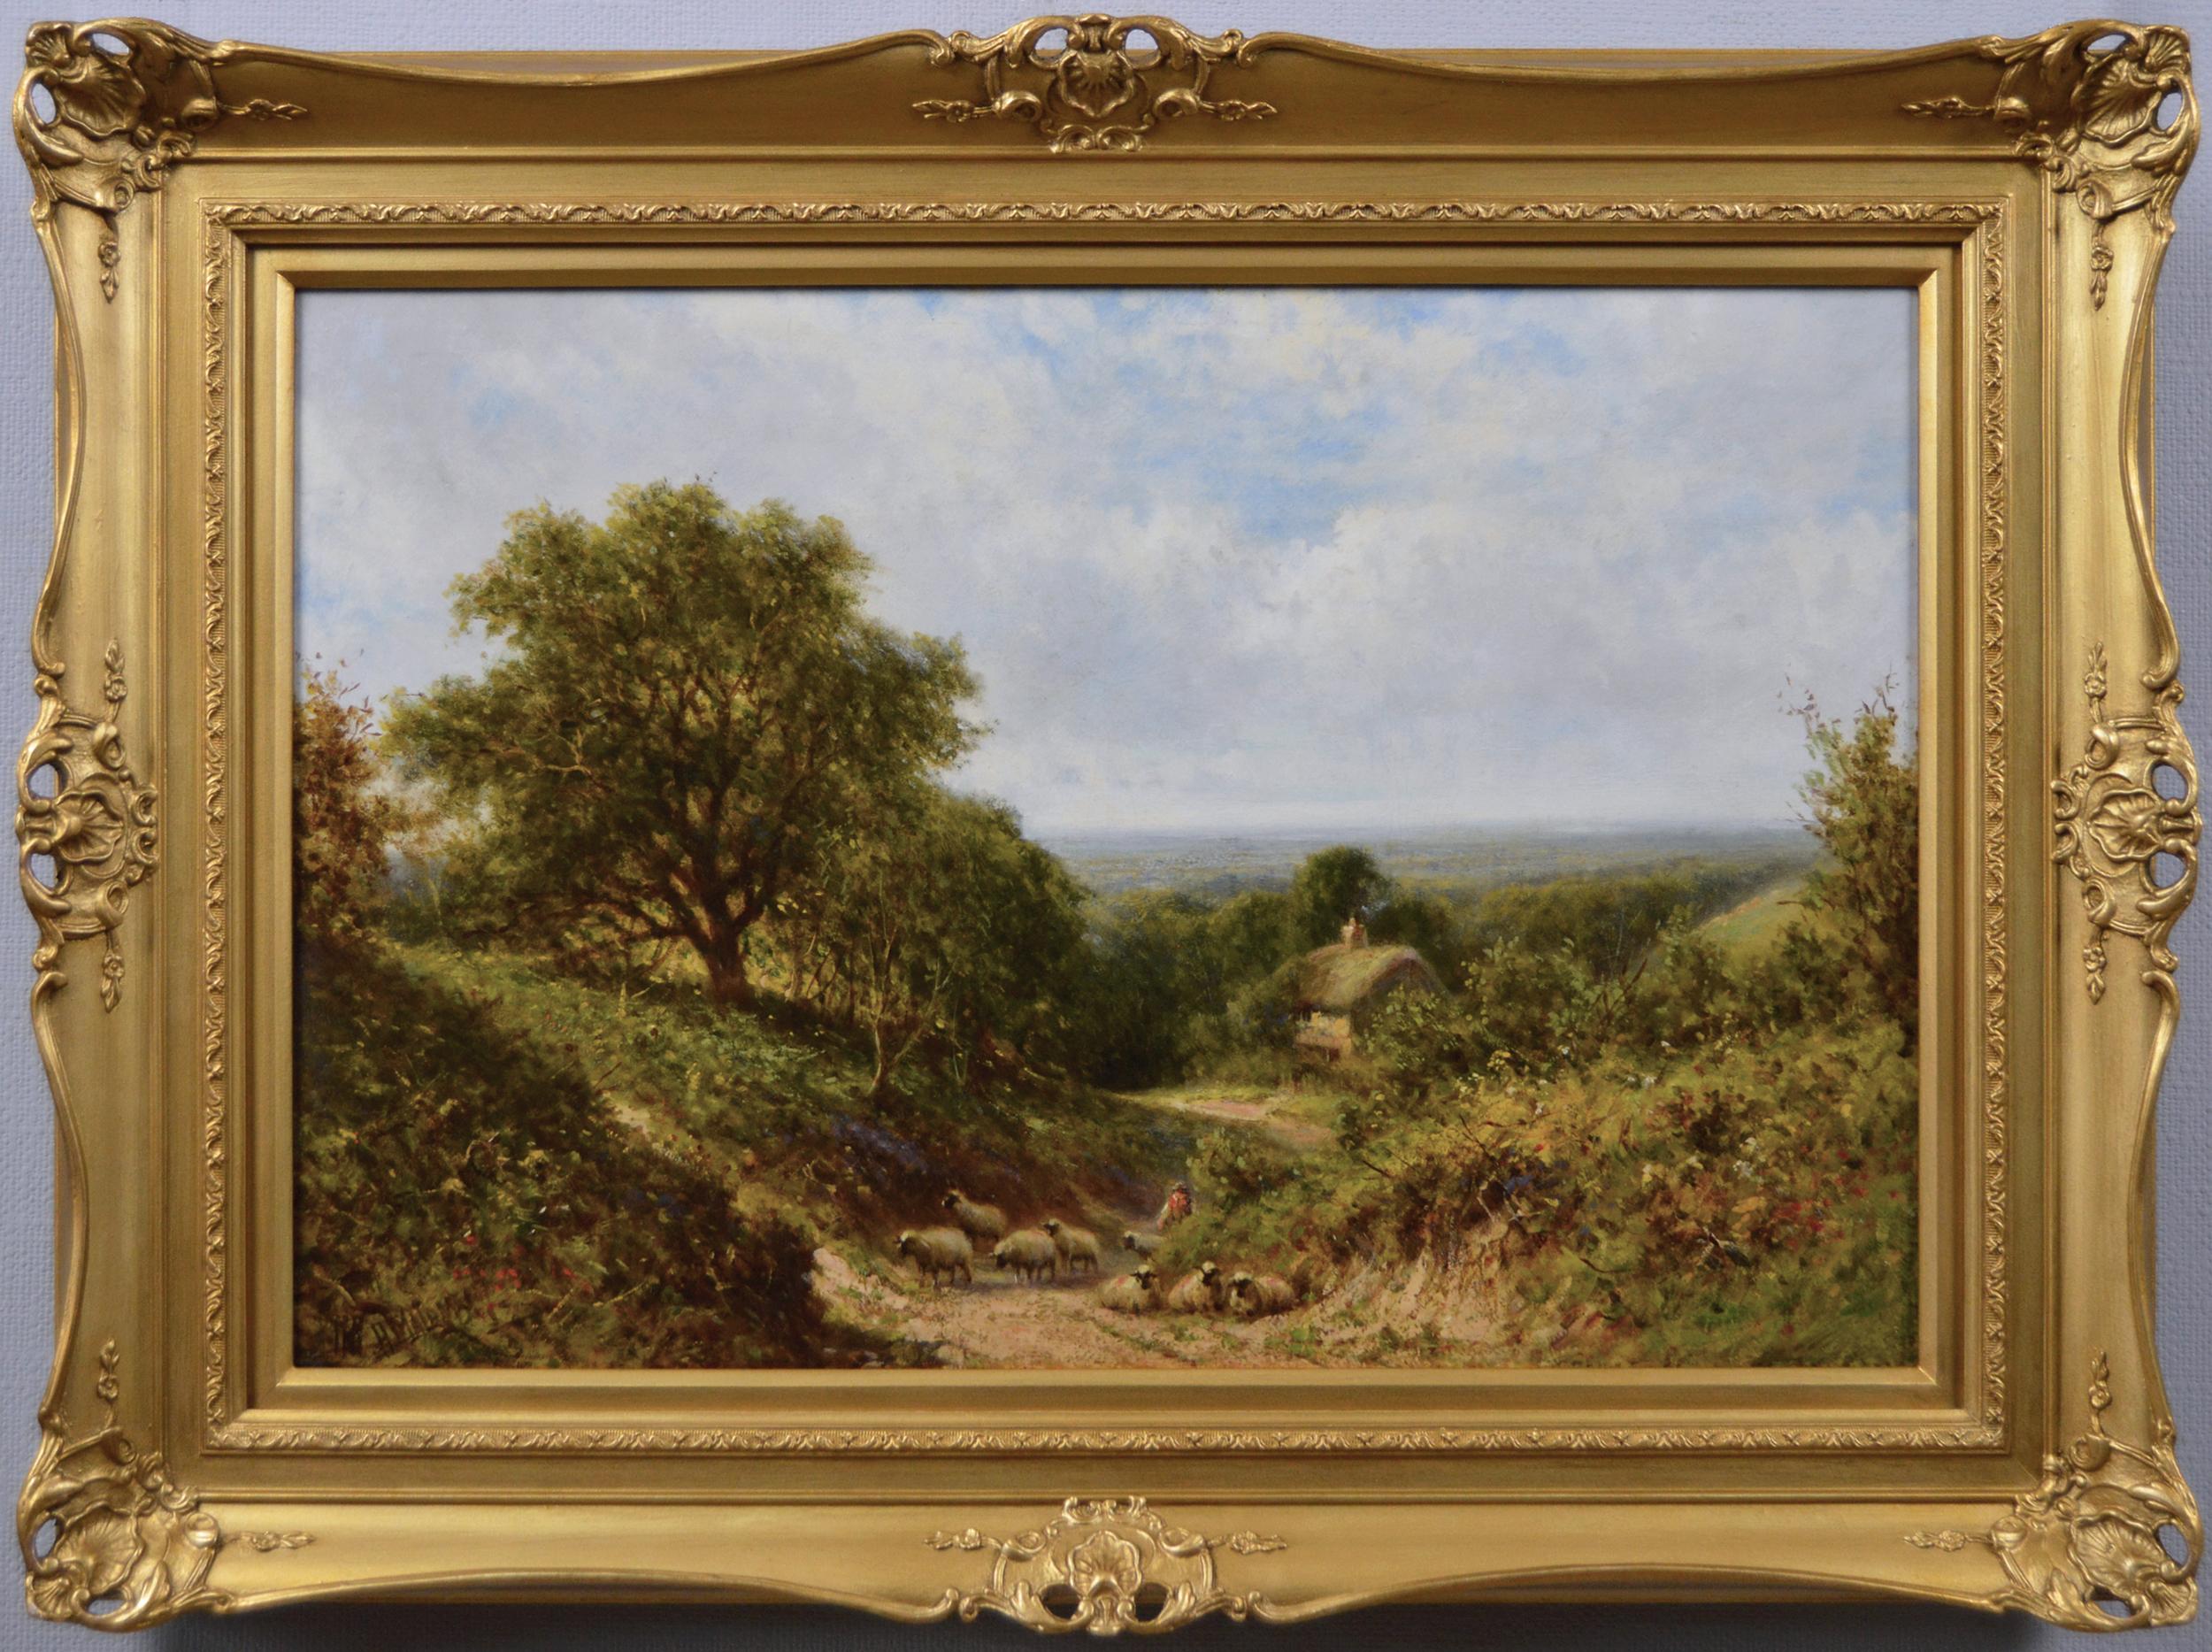 Peinture à l'huile de paysage du 19e siècle représentant des moutons